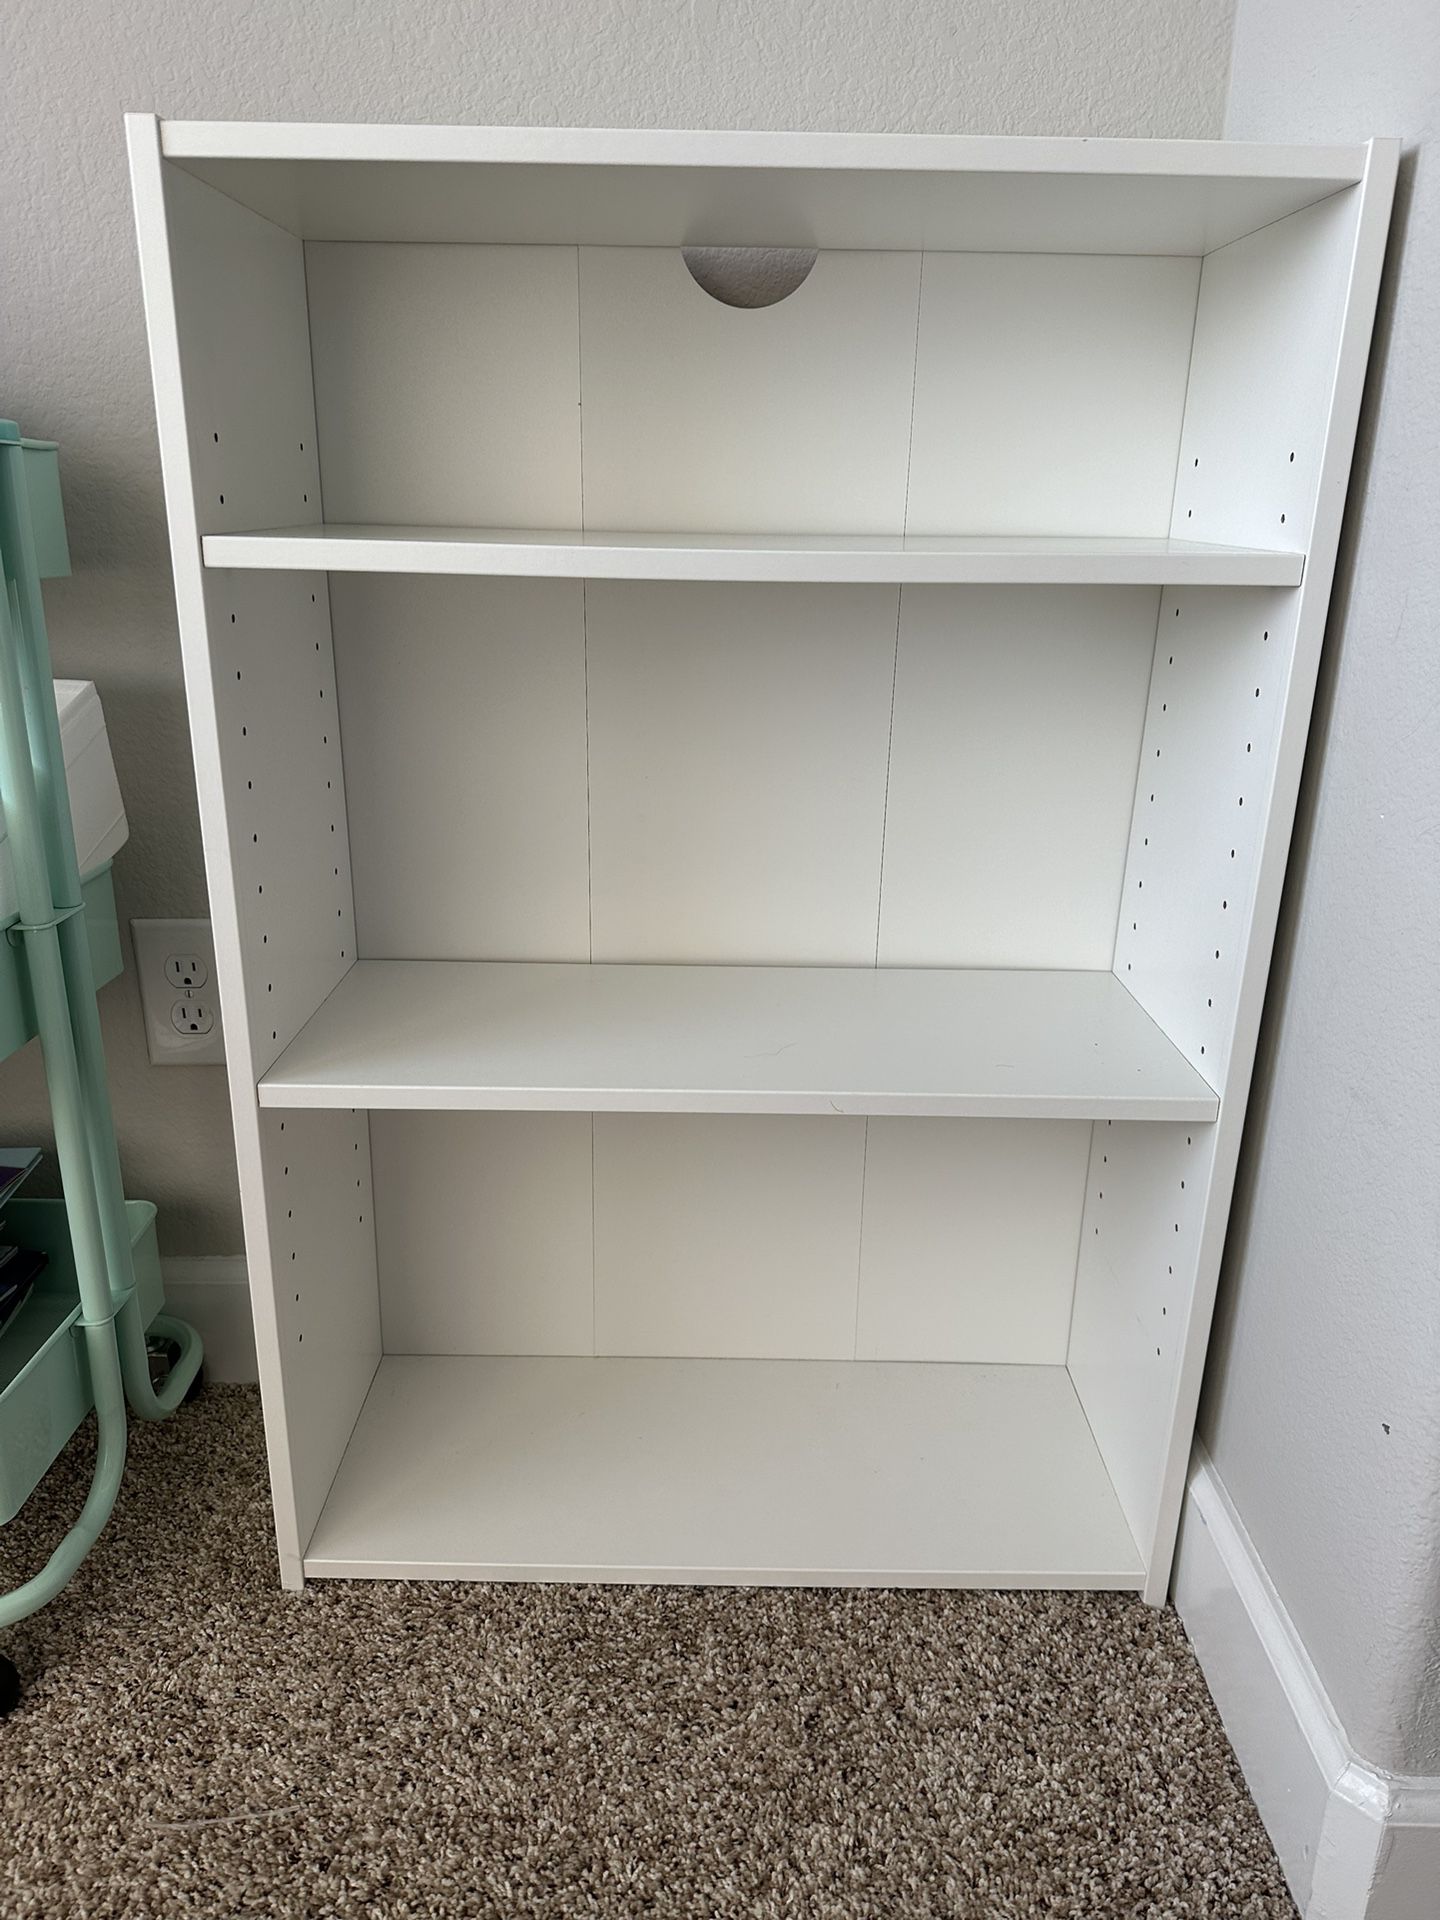 IKEA white Bookshelf - Measurements In Photos